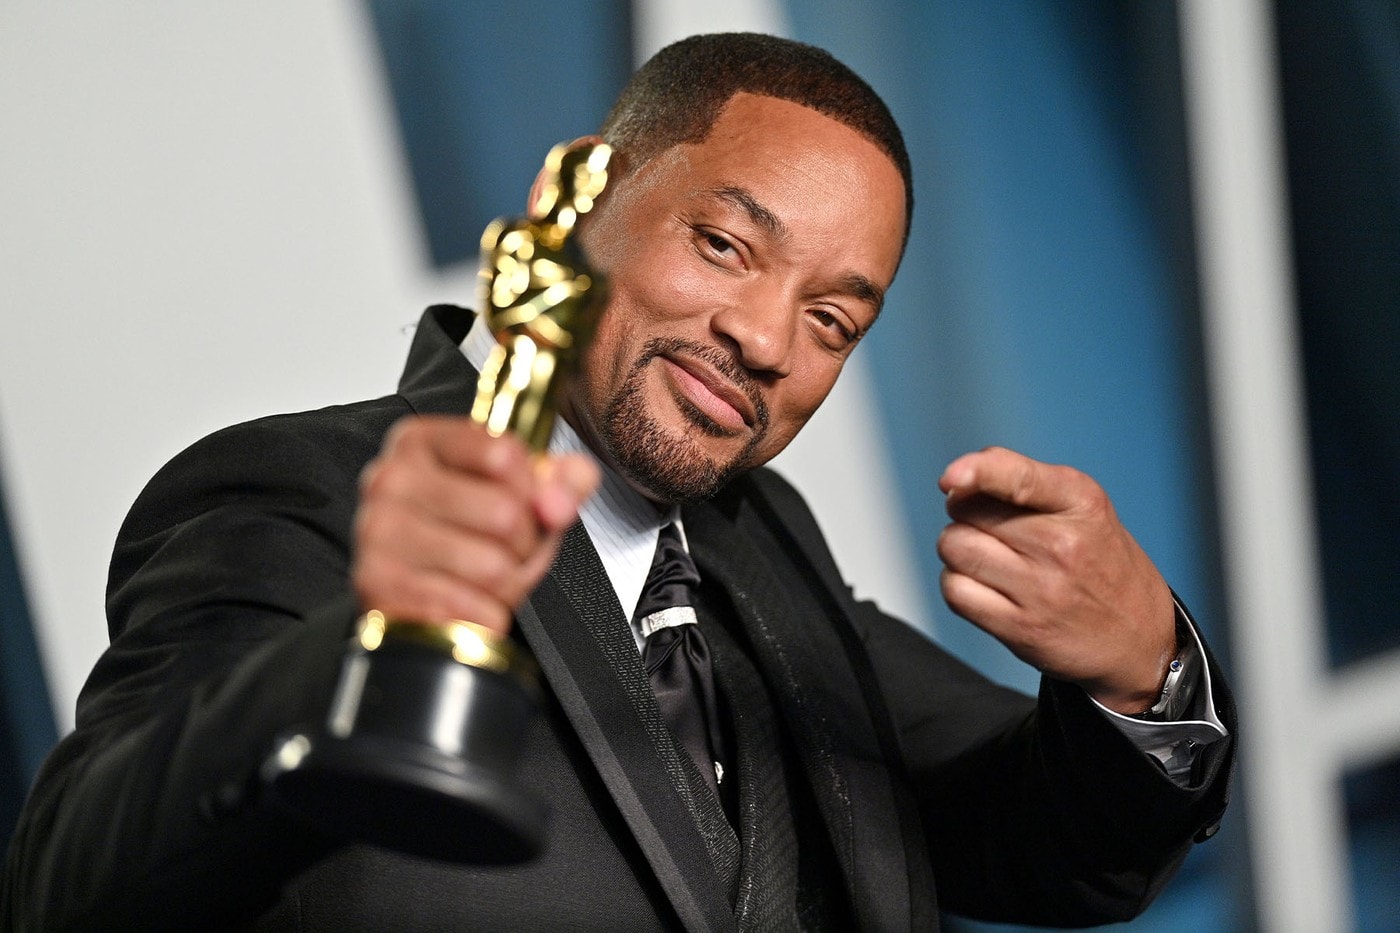 美國影藝學院針對 Oscars「Will Smith 賞巴掌」事件發表紀律處分聲明